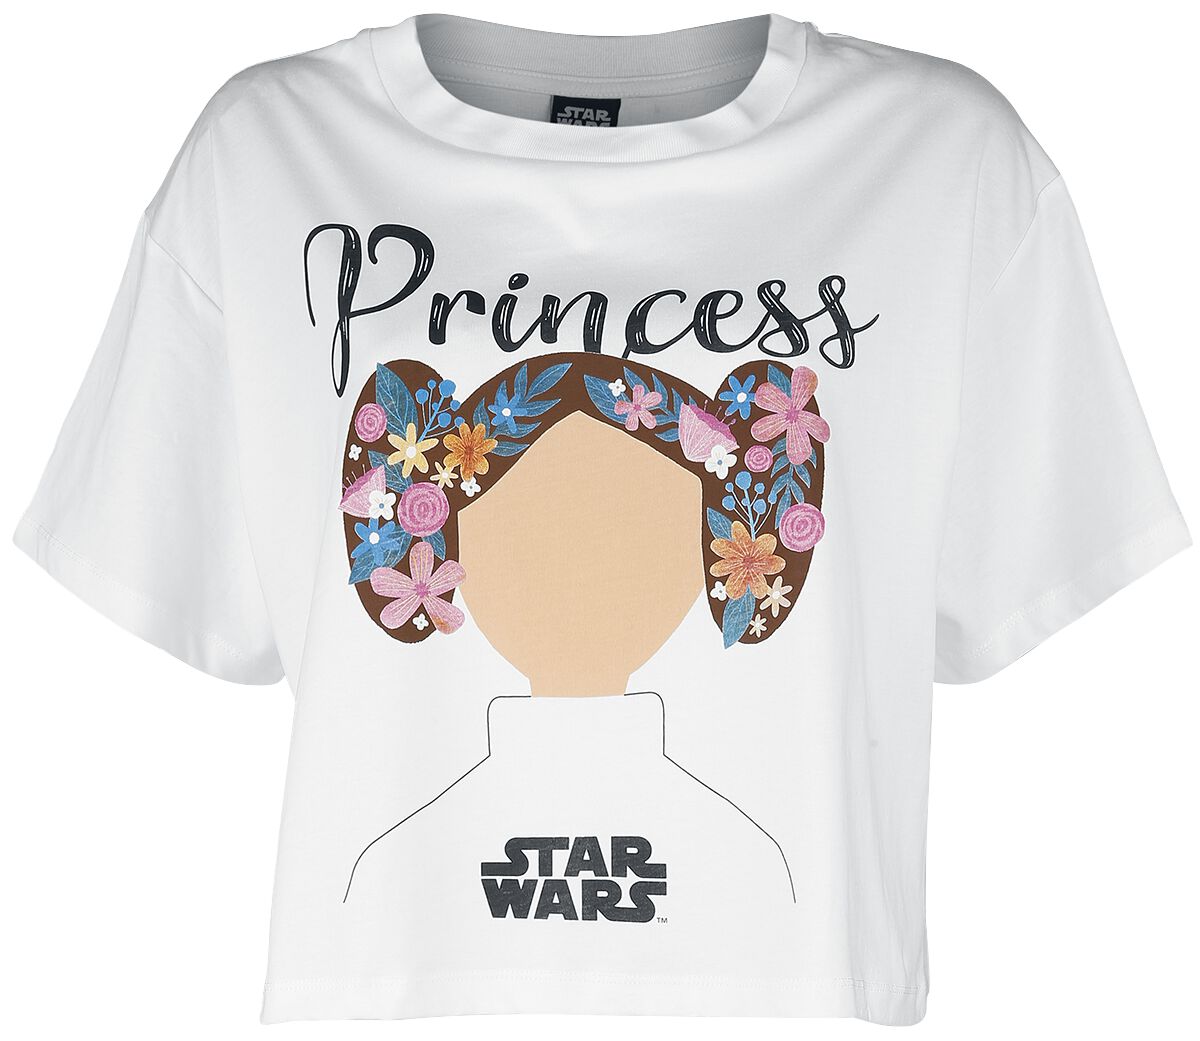 Star Wars T-Shirt - Star Wars - Princess Lea - S bis XXL - für Damen - Größe M - weiß  - EMP exklusives Merchandise!